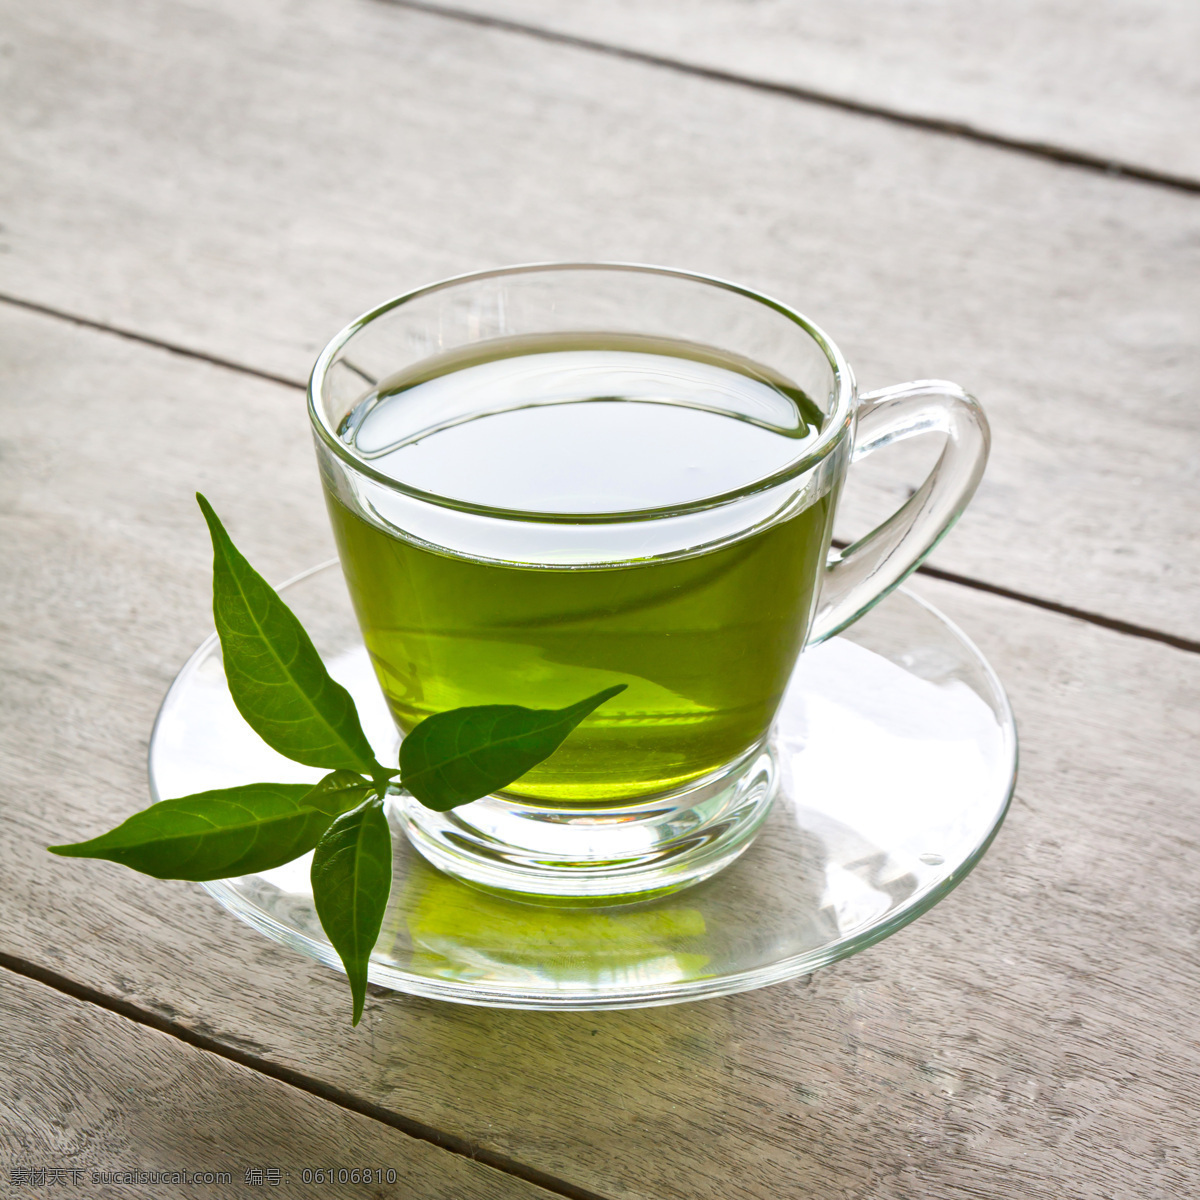 一杯 清香 绿茶 绿叶 茶杯 茶具 保健茶 茶叶 茶 休闲饮品 健康食品 酒水饮料 茶道图片 餐饮美食